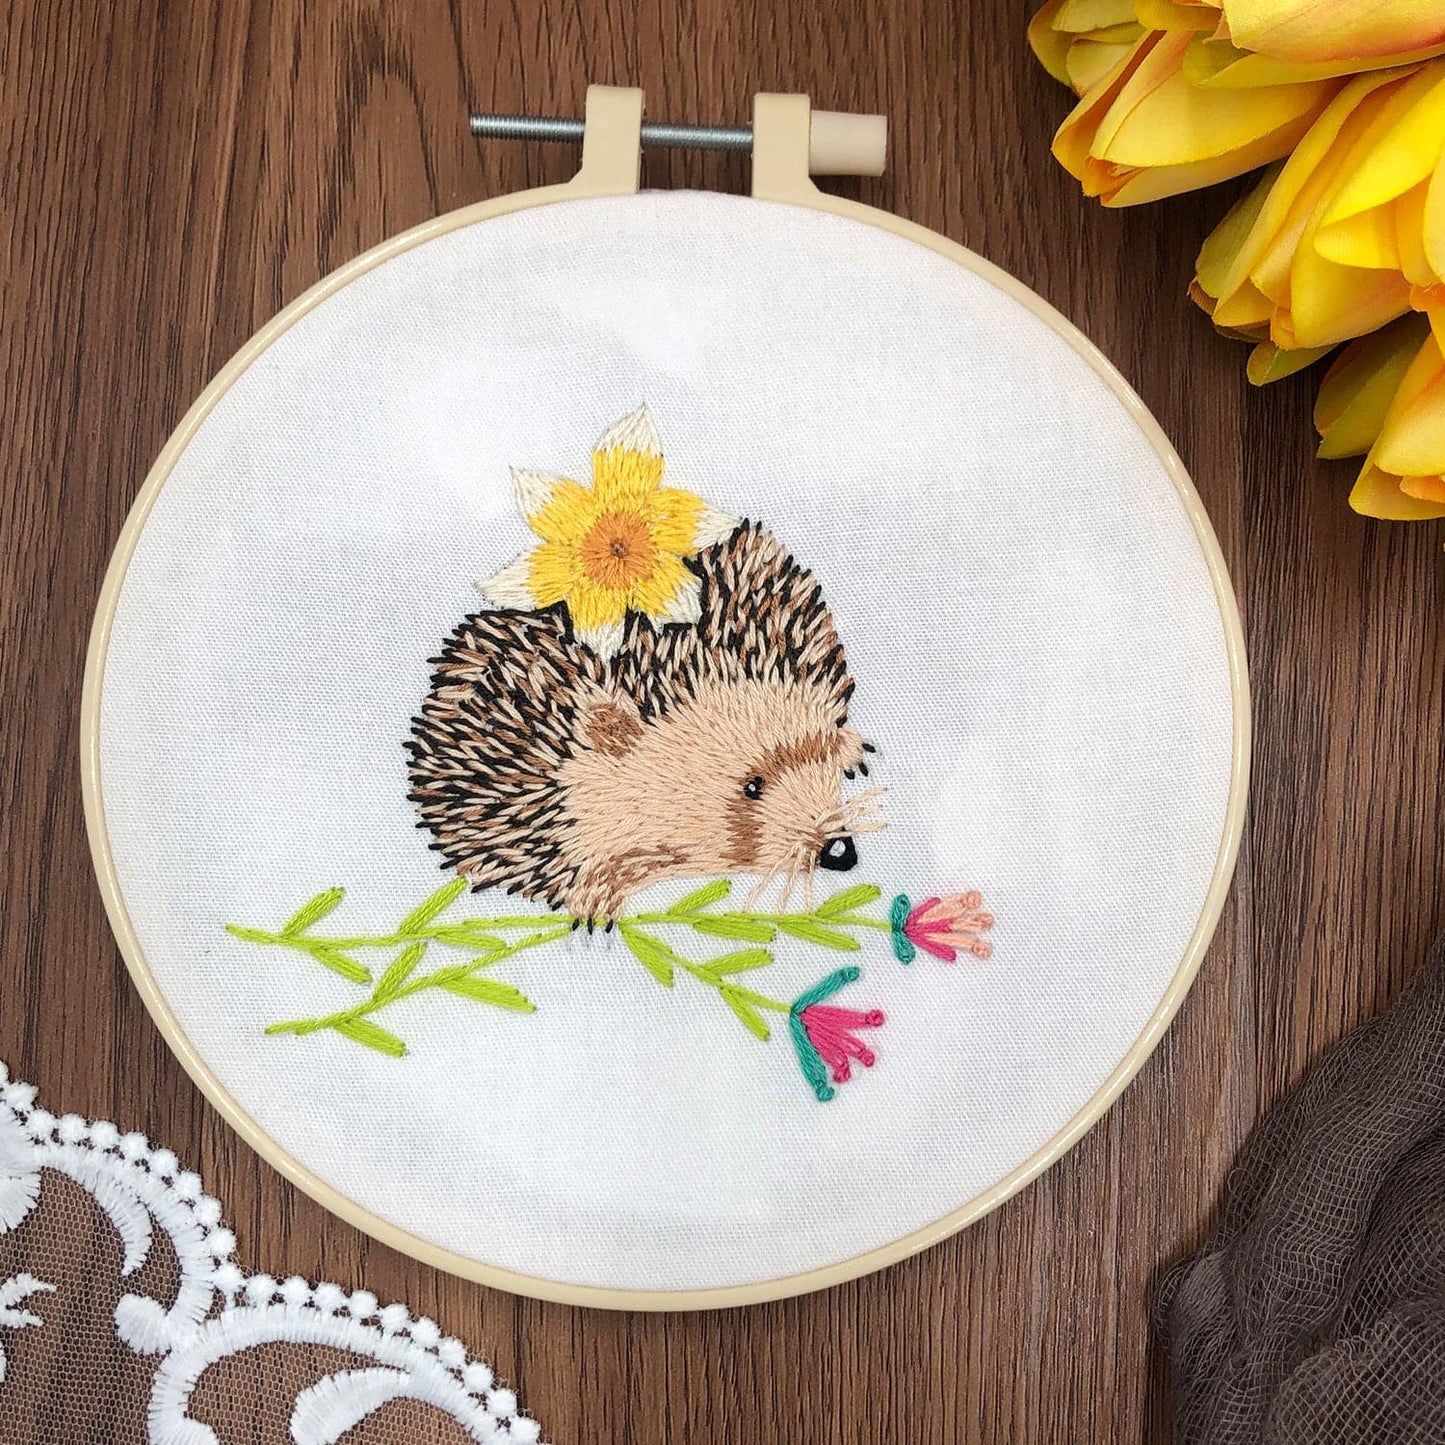 Cute little hedgehog-embroidery ktclubs.com